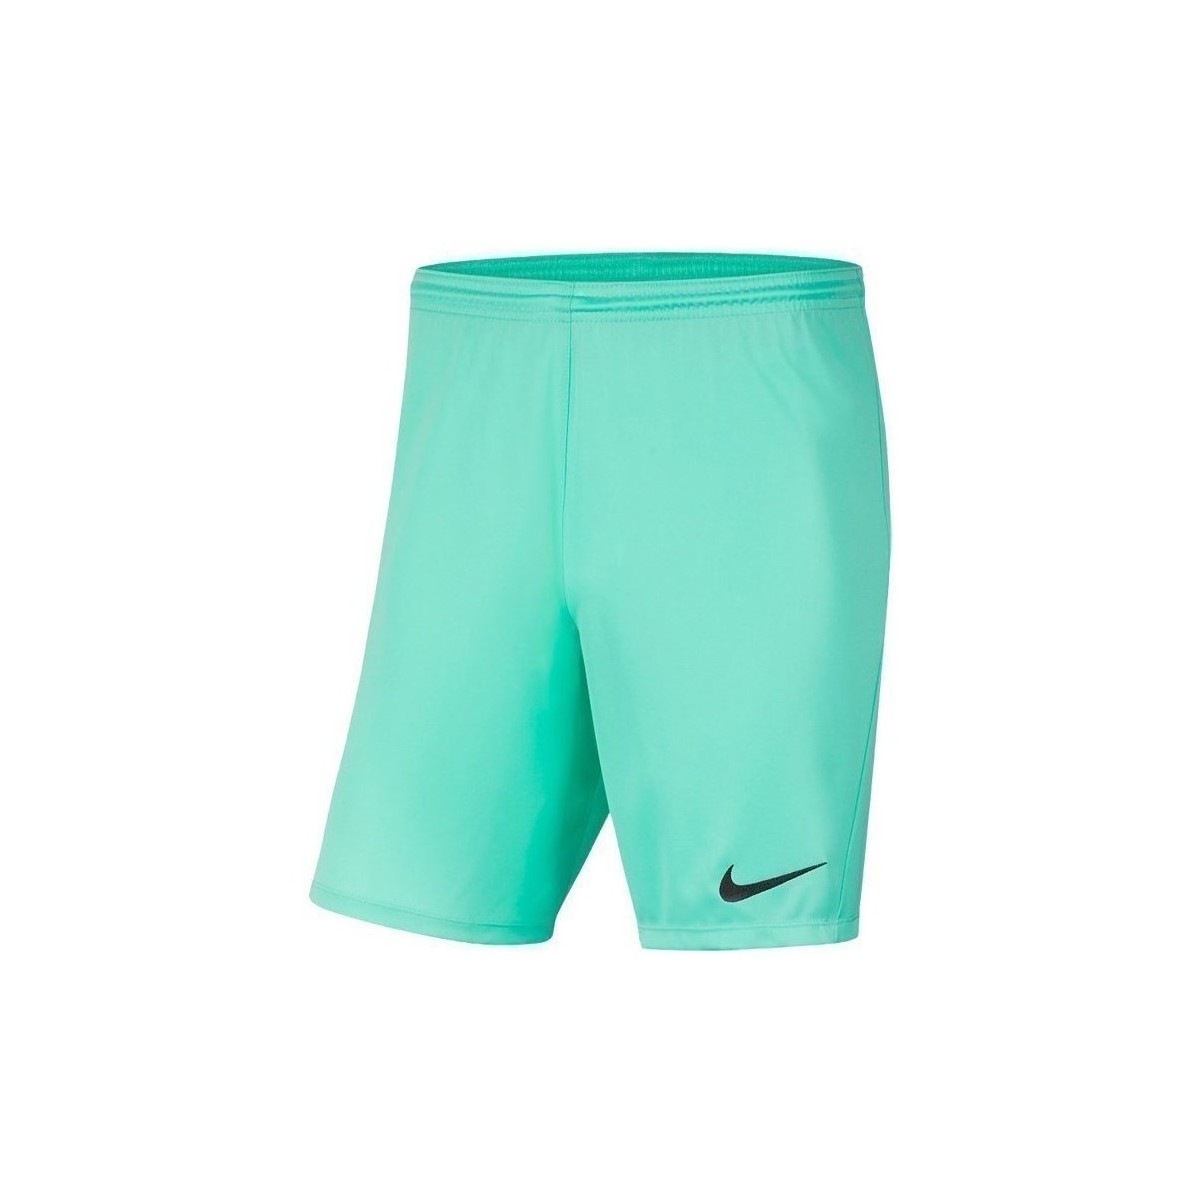 Îmbracaminte Băieți Pantaloni trei sferturi Nike JR Park Iii Knit verde